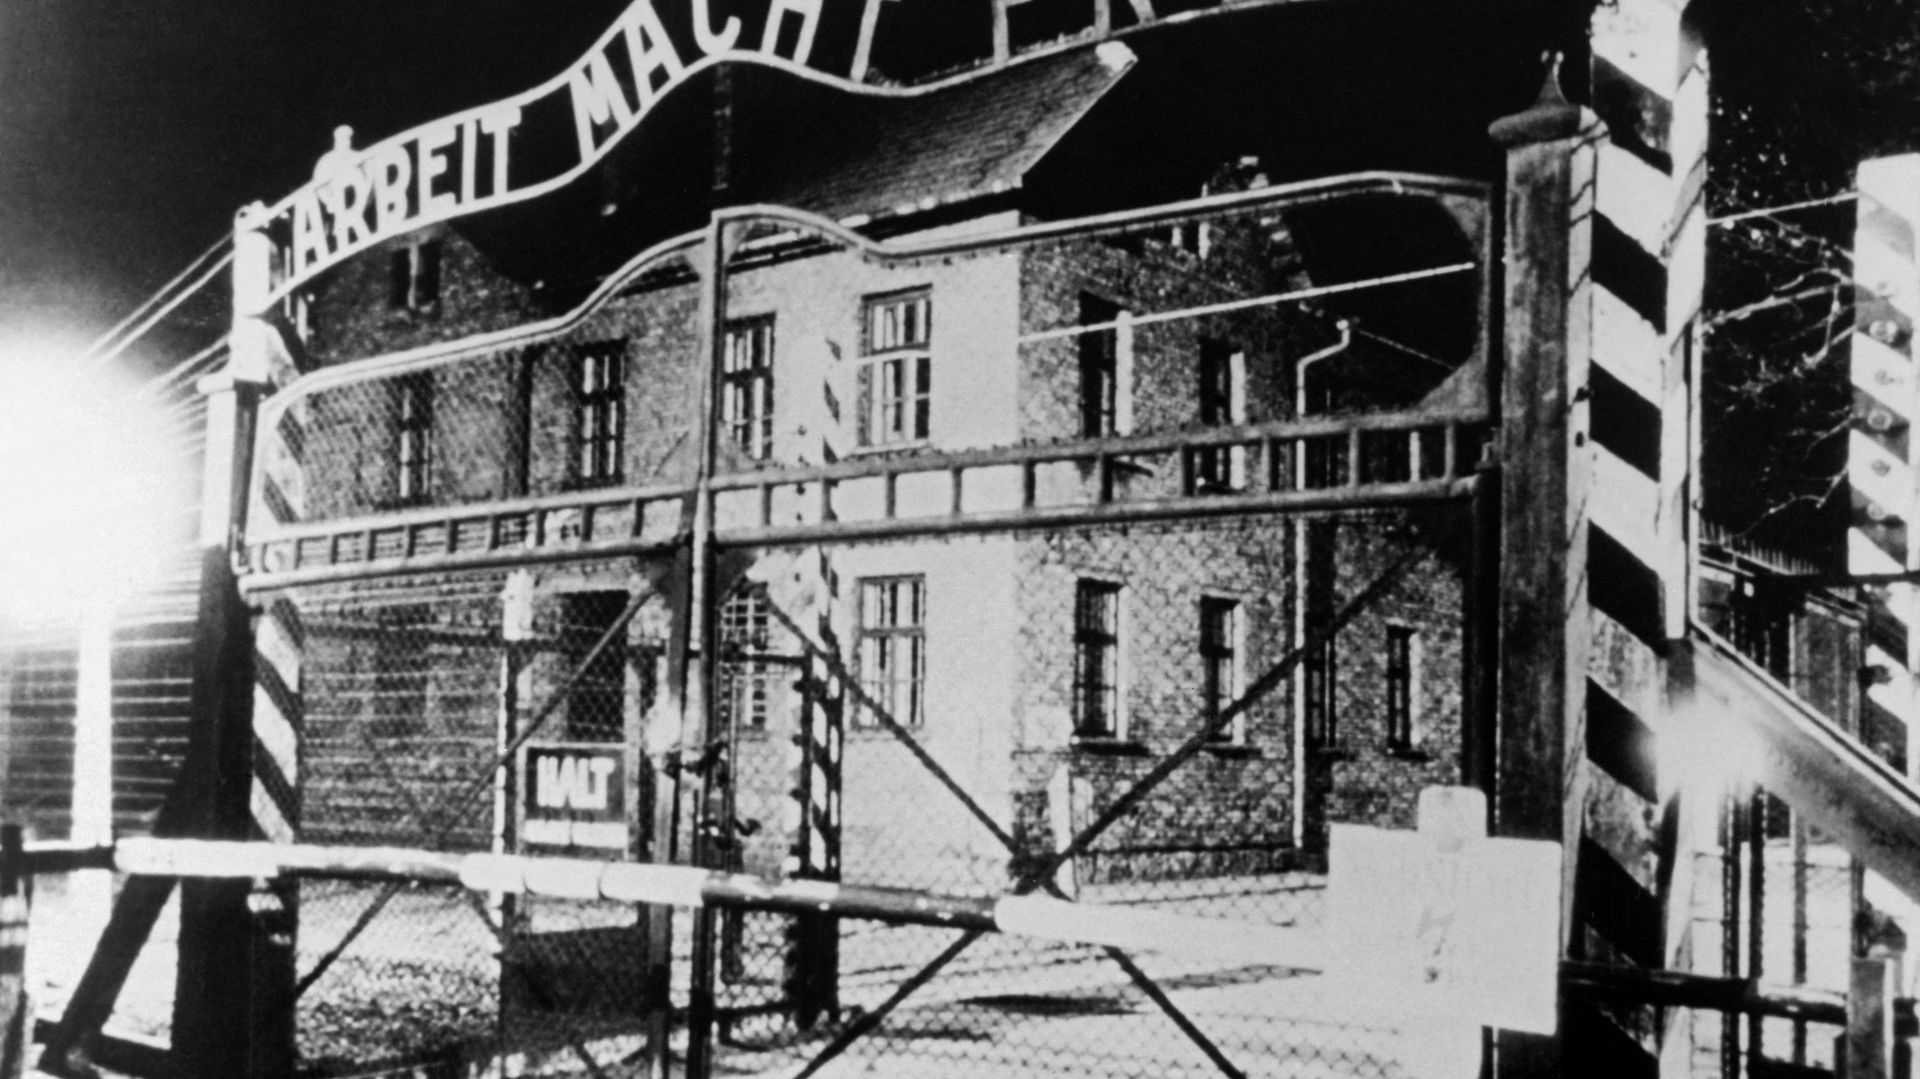 L'entrée du camp de concentration d'Auschwitz, photographié en janvier 1945 après sa libération.